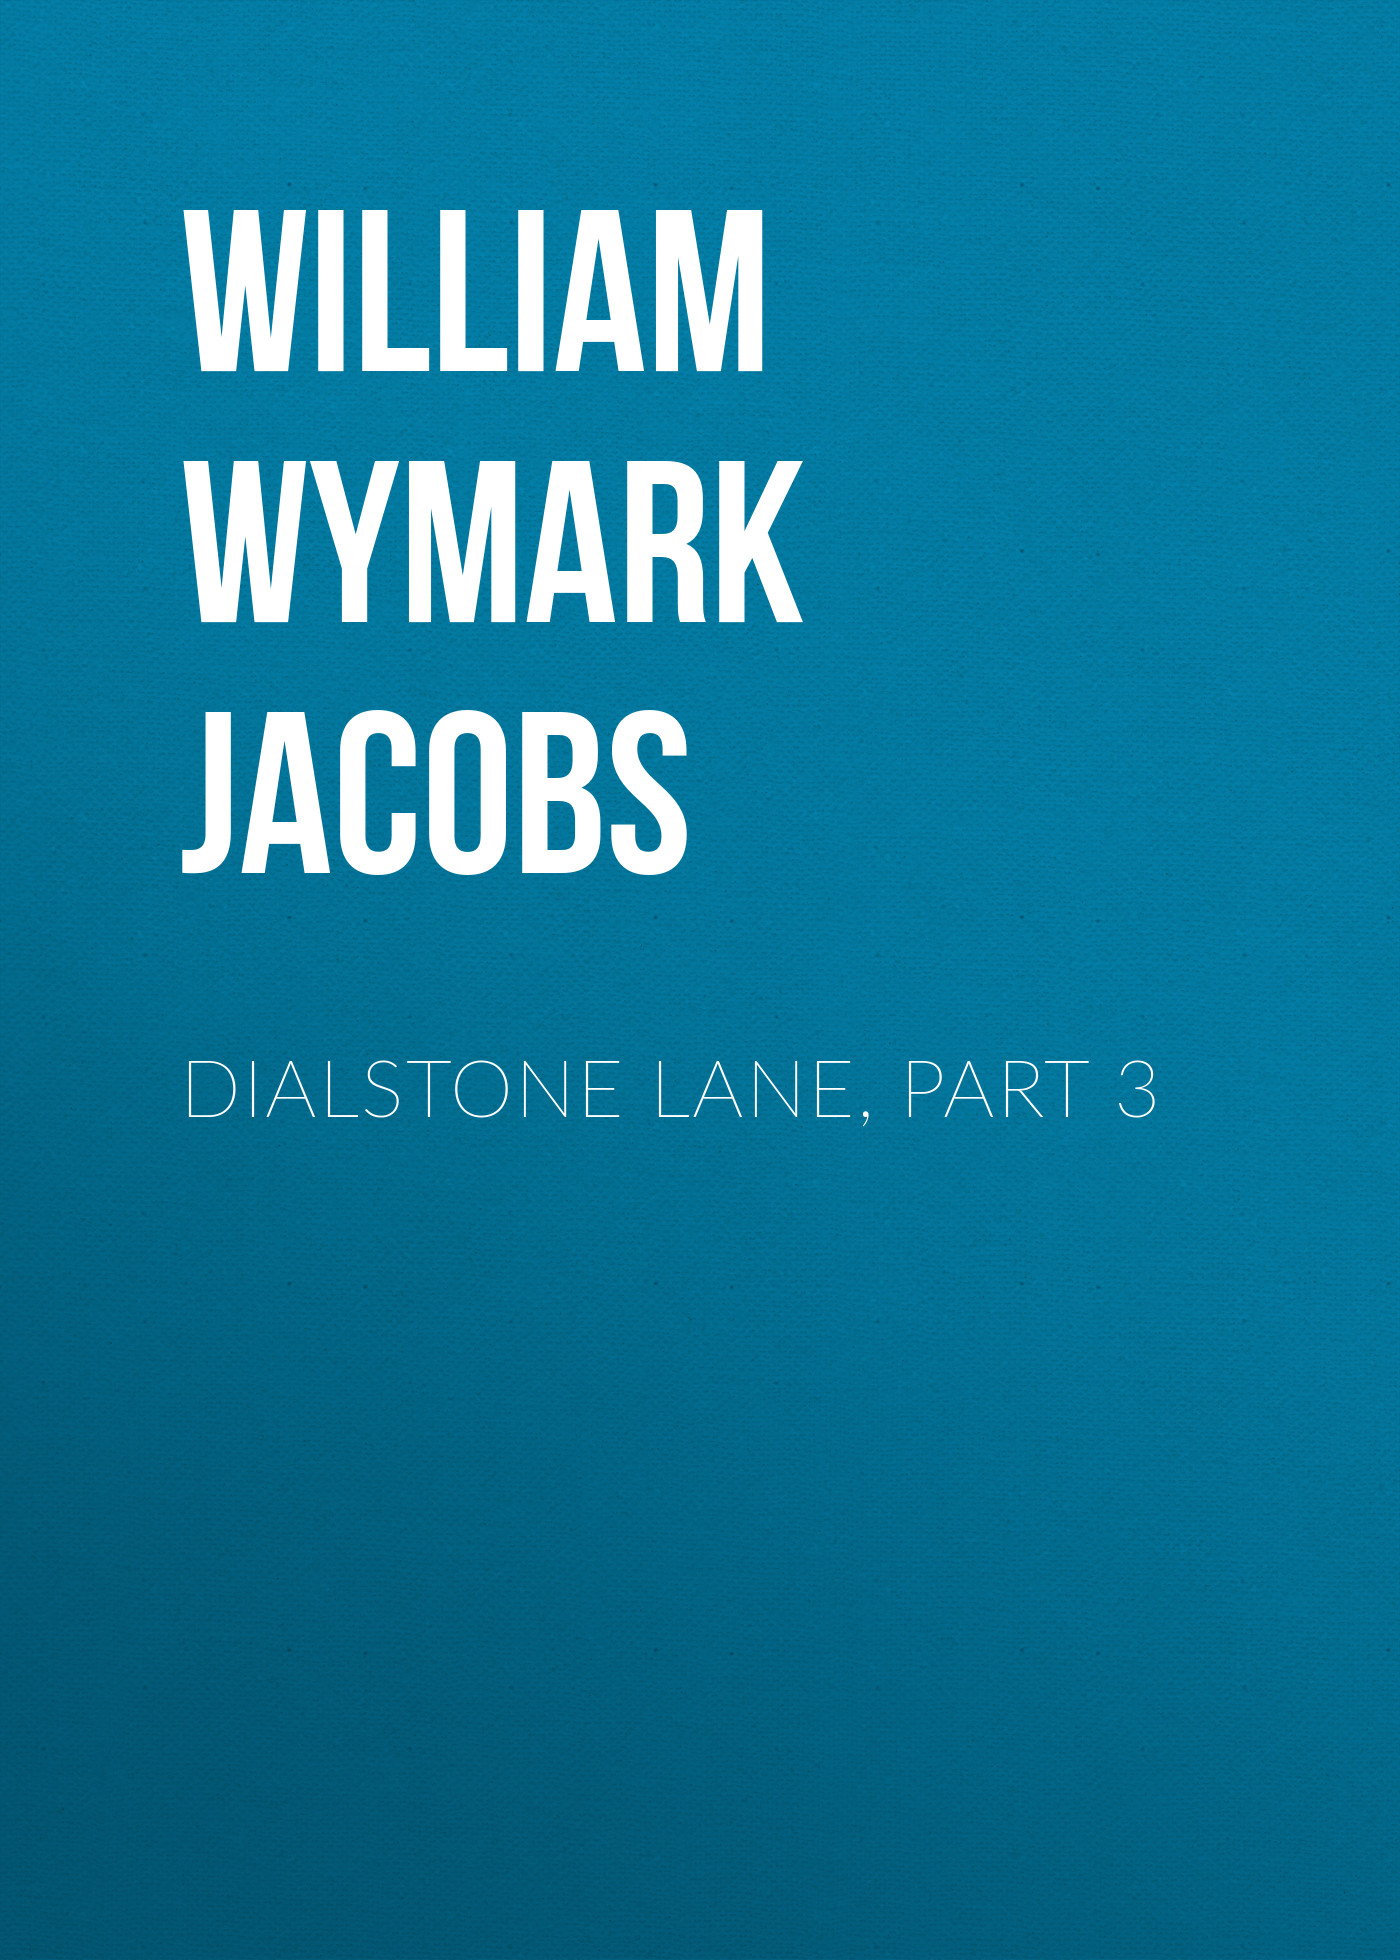 Книга Dialstone Lane, Part 3 из серии , созданная William Wymark Jacobs, может относится к жанру Книги о Путешествиях, Зарубежная старинная литература, Зарубежная классика. Стоимость электронной книги Dialstone Lane, Part 3 с идентификатором 34844182 составляет 0 руб.